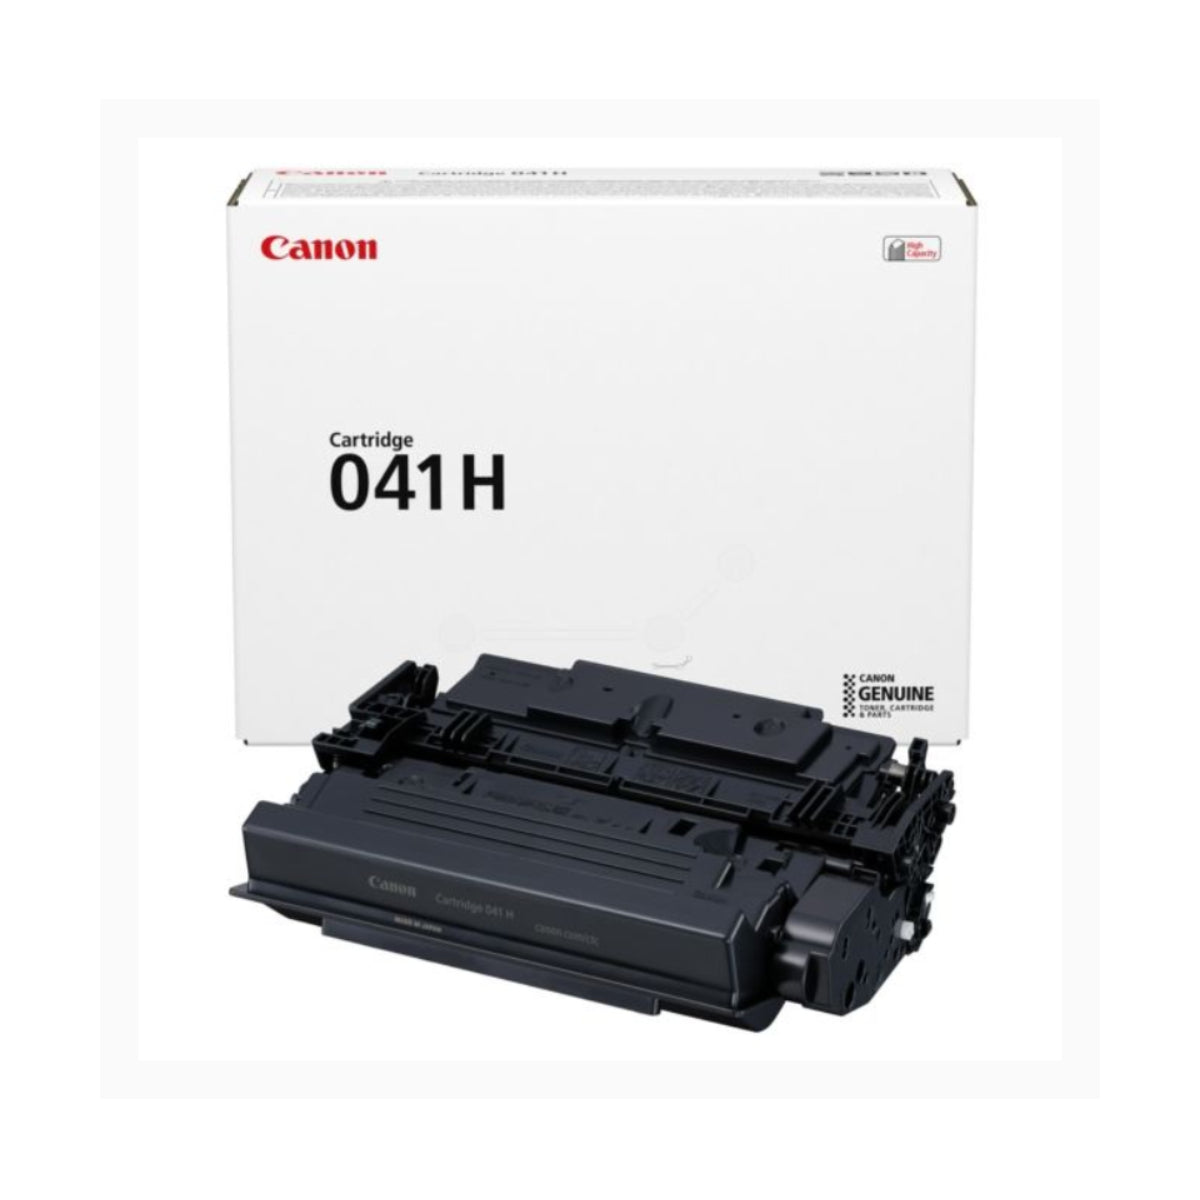 CANON 041H (0453C001) Black Original Toner Cartridge